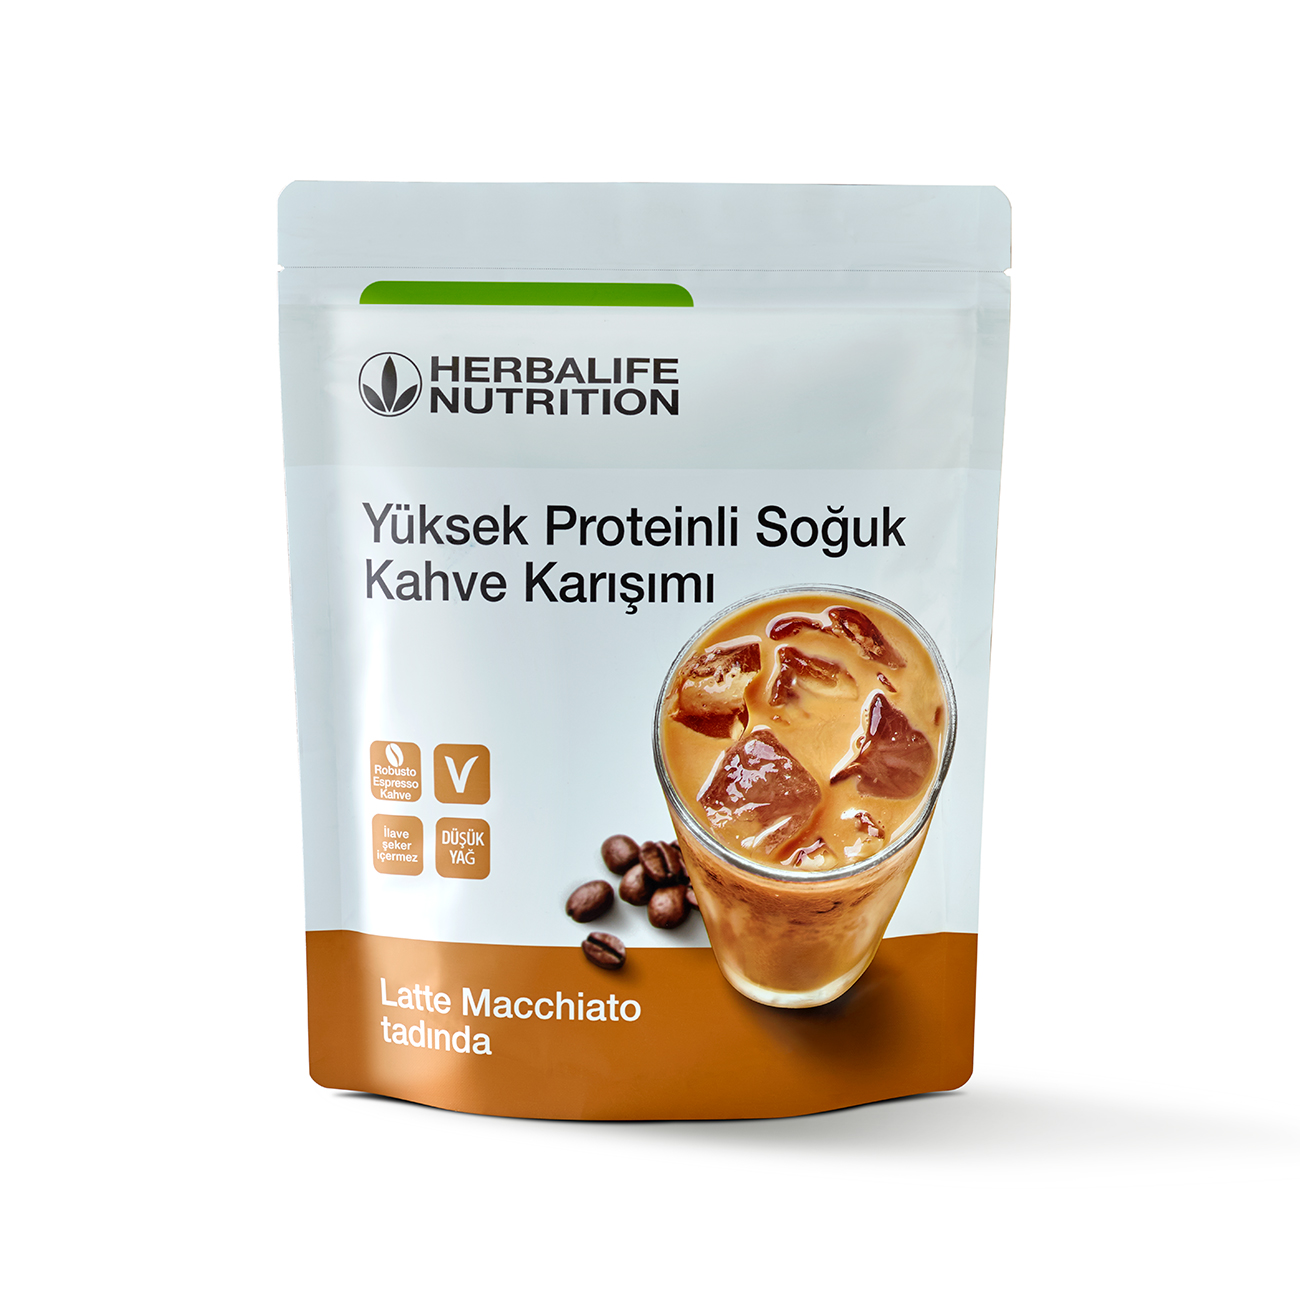 Herbalife Yüksek Proteinli Soğuk Kahve Karışımı​